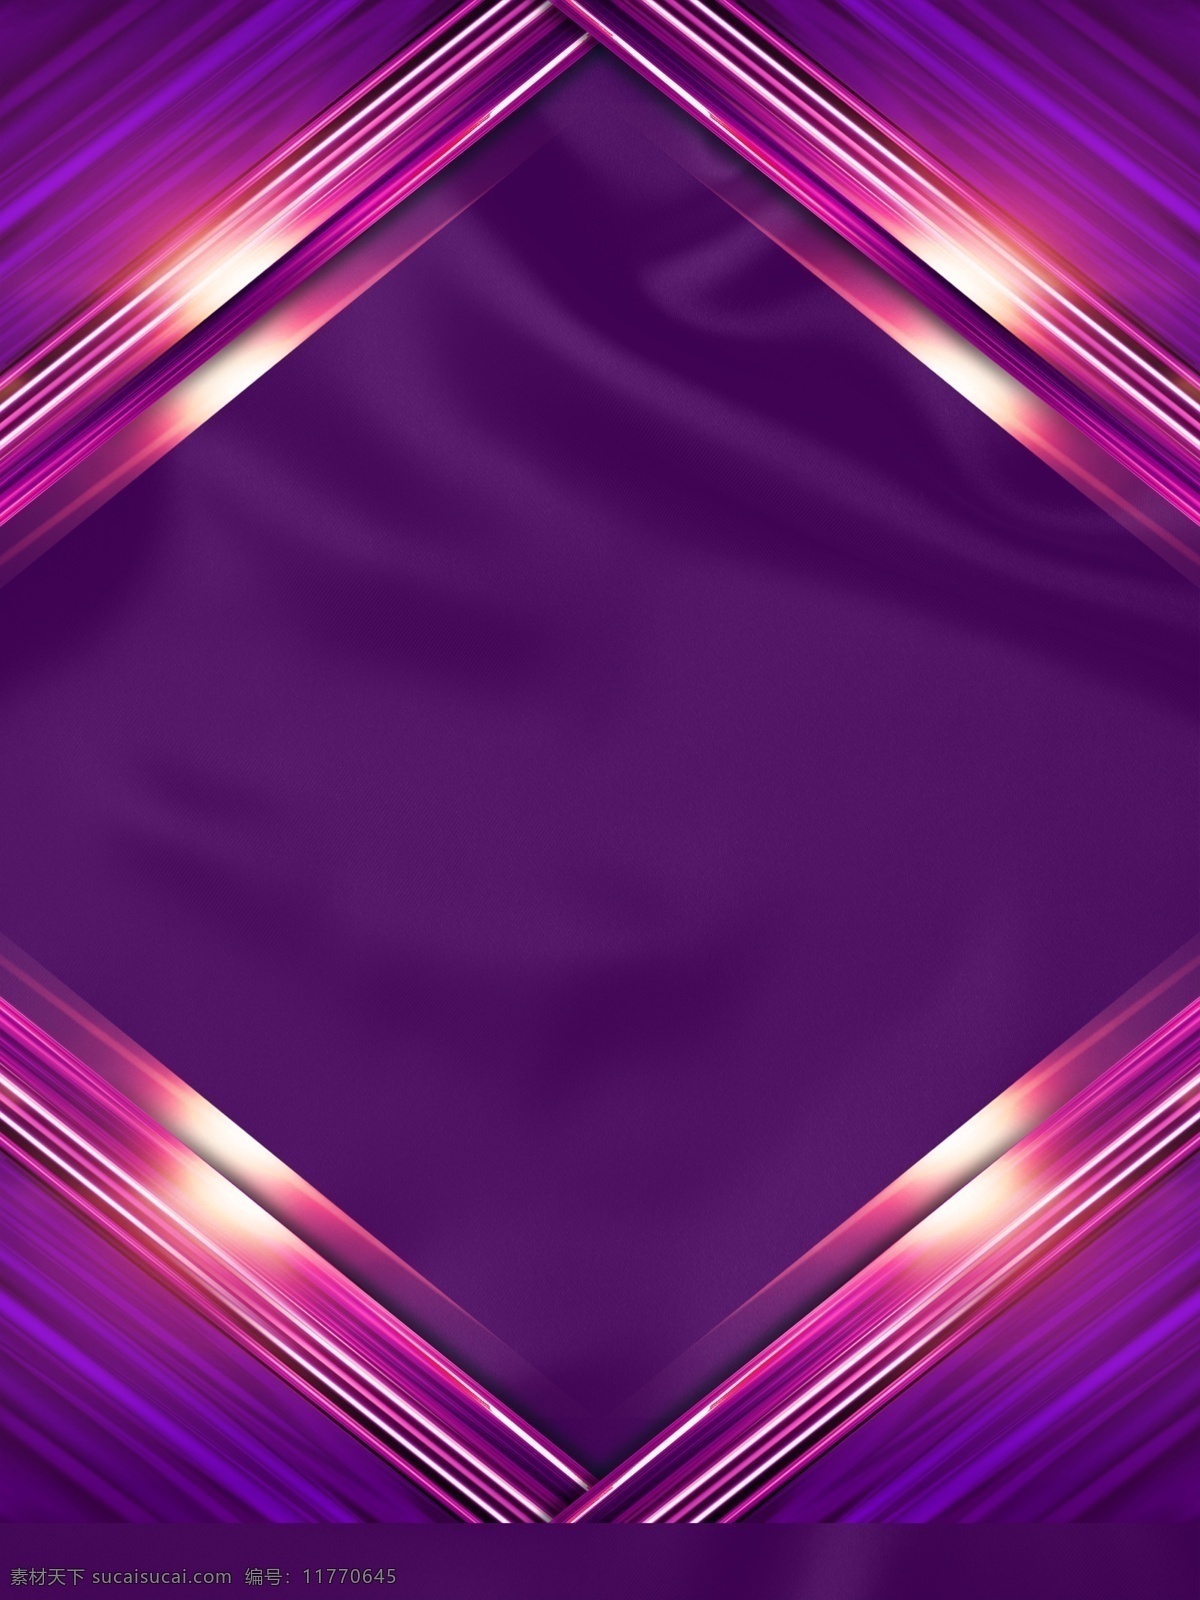 简约 酷 炫 紫色 背景 酷炫 紫色背景 色彩 背景素材 广告背景 彩色背景